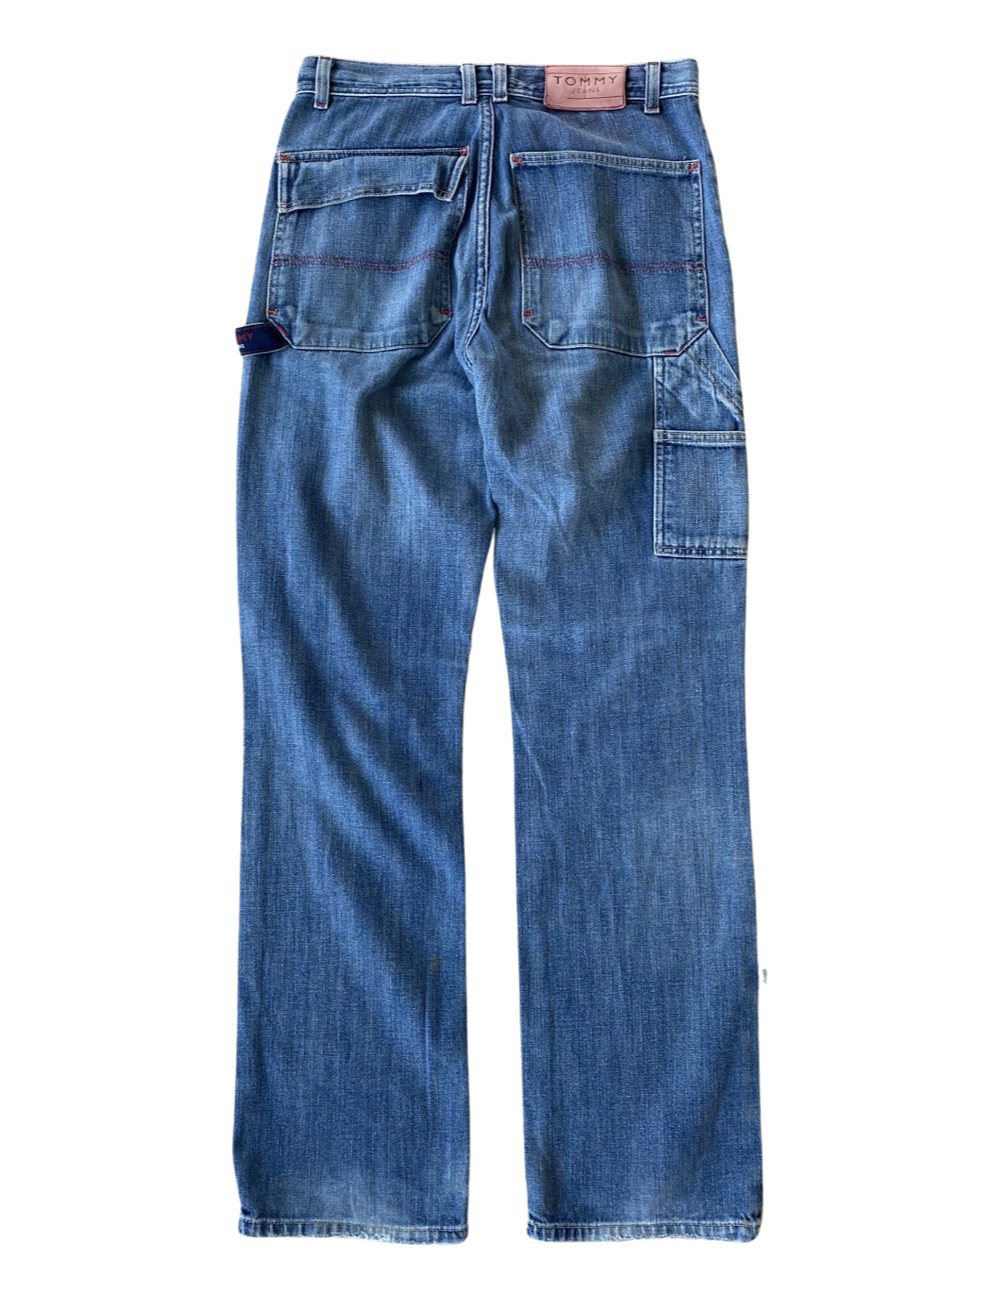 Vintage Hilfiger Worker Pants